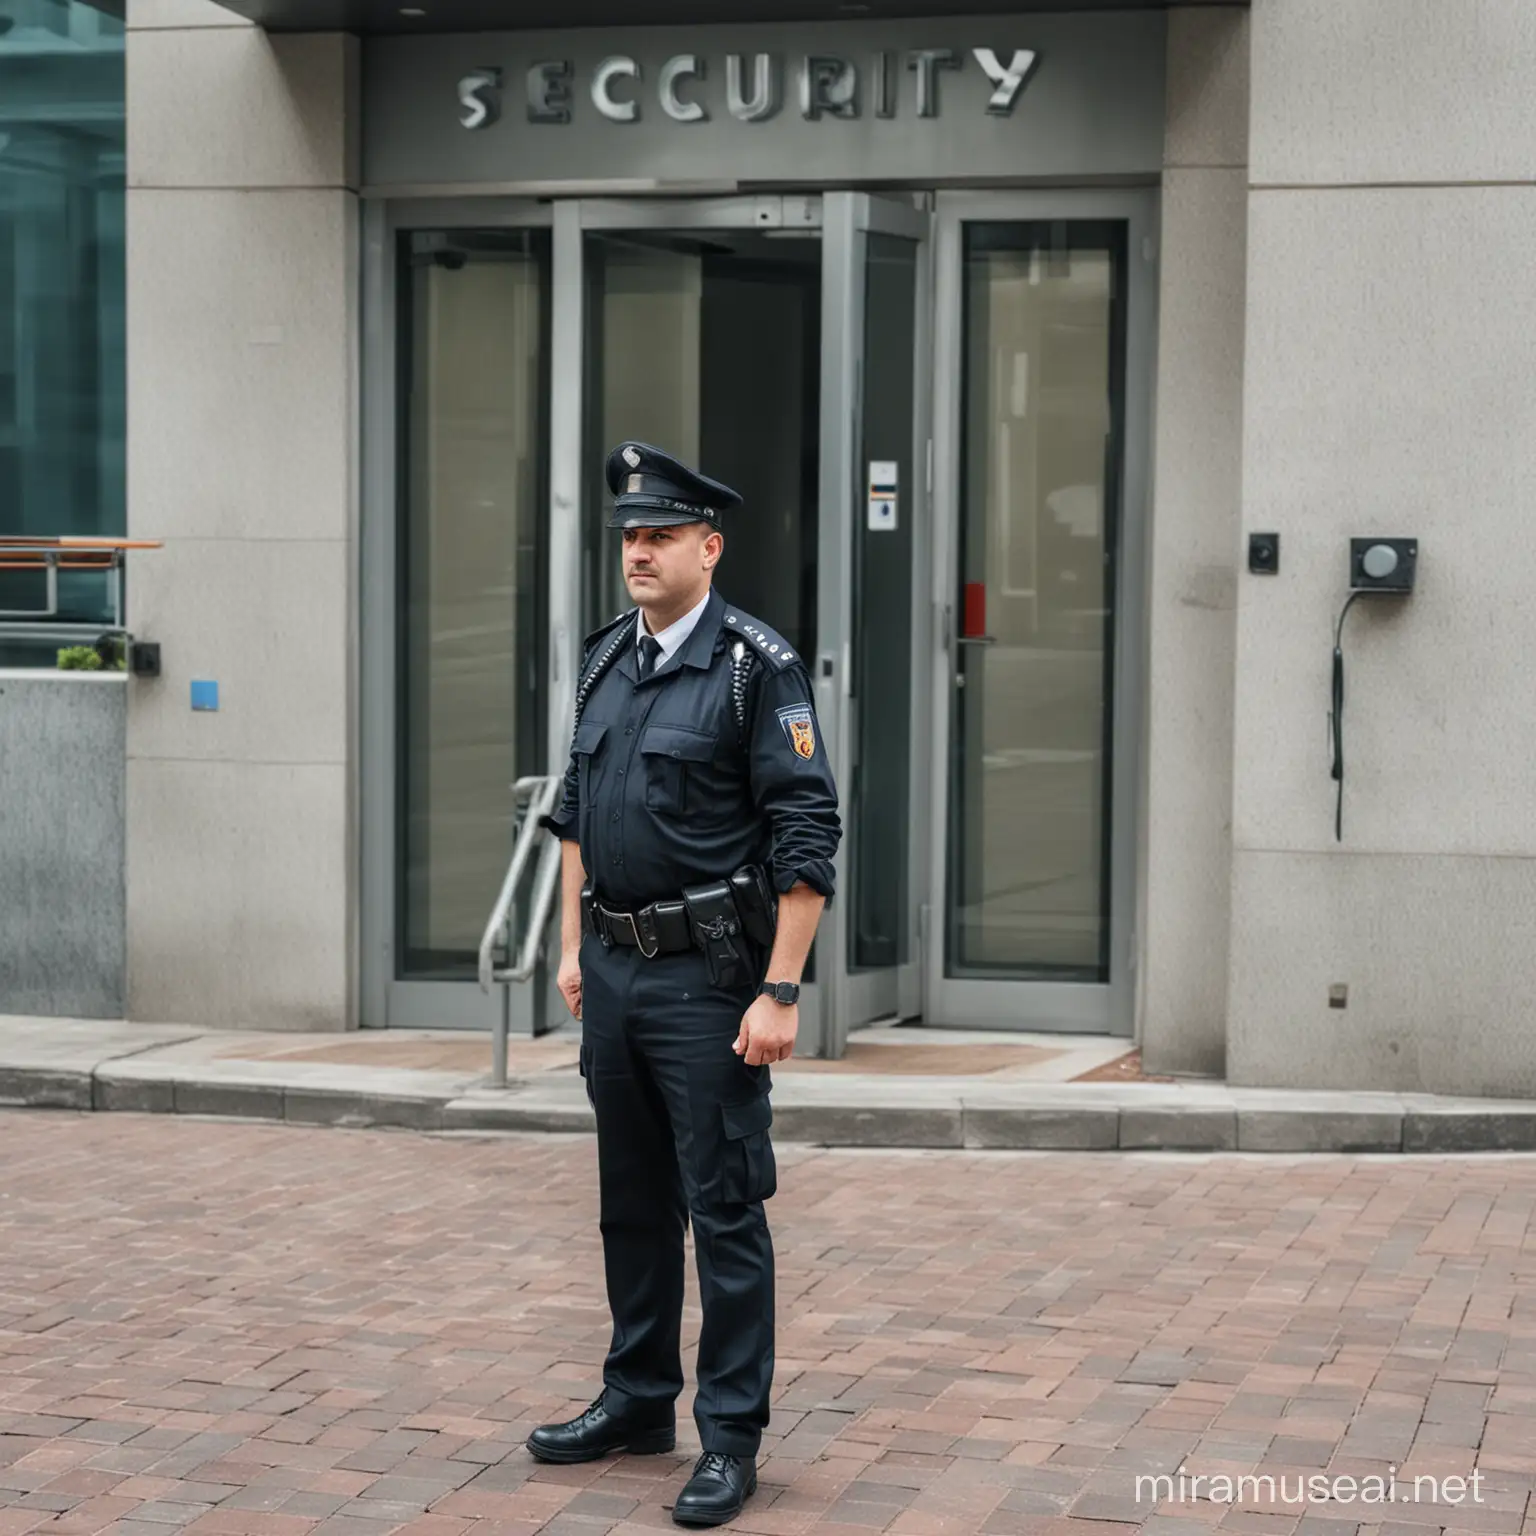 Guardia de seguridad protegiendo entrada y salida de personal de una empresa importante